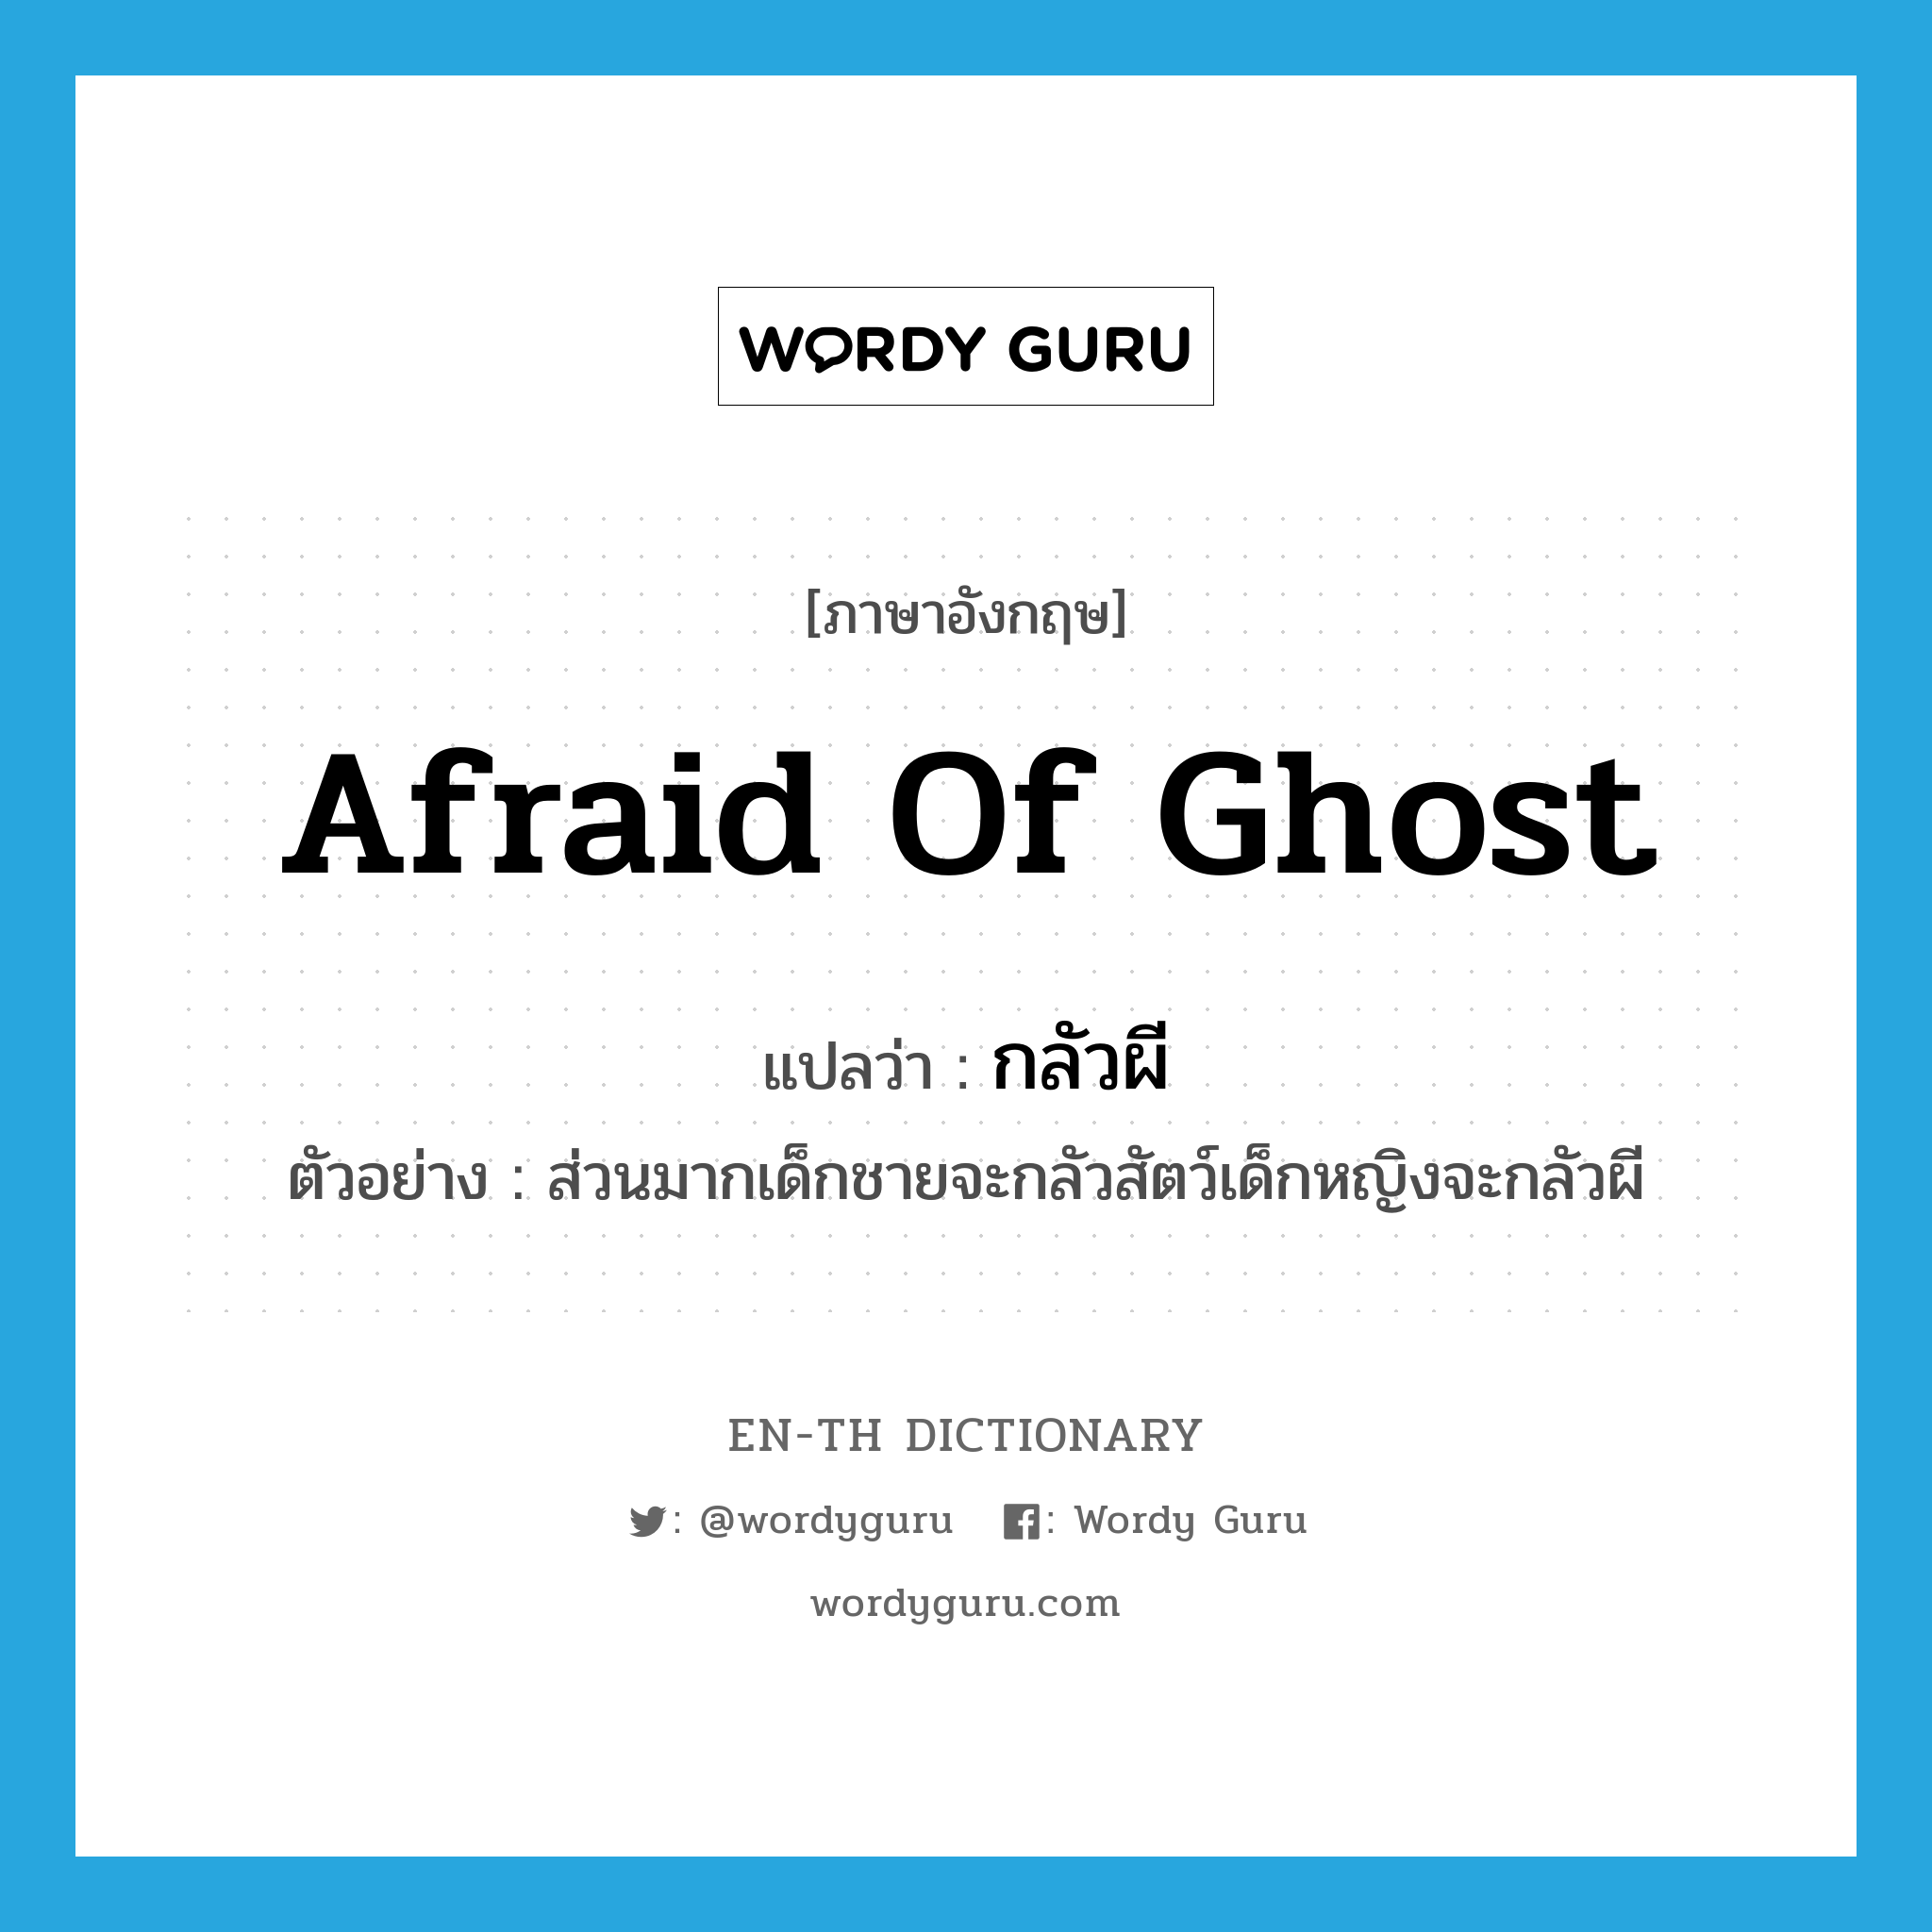 afraid of ghost แปลว่า?, คำศัพท์ภาษาอังกฤษ afraid of ghost แปลว่า กลัวผี ประเภท V ตัวอย่าง ส่วนมากเด็กชายจะกลัวสัตว์เด็กหญิงจะกลัวผี หมวด V